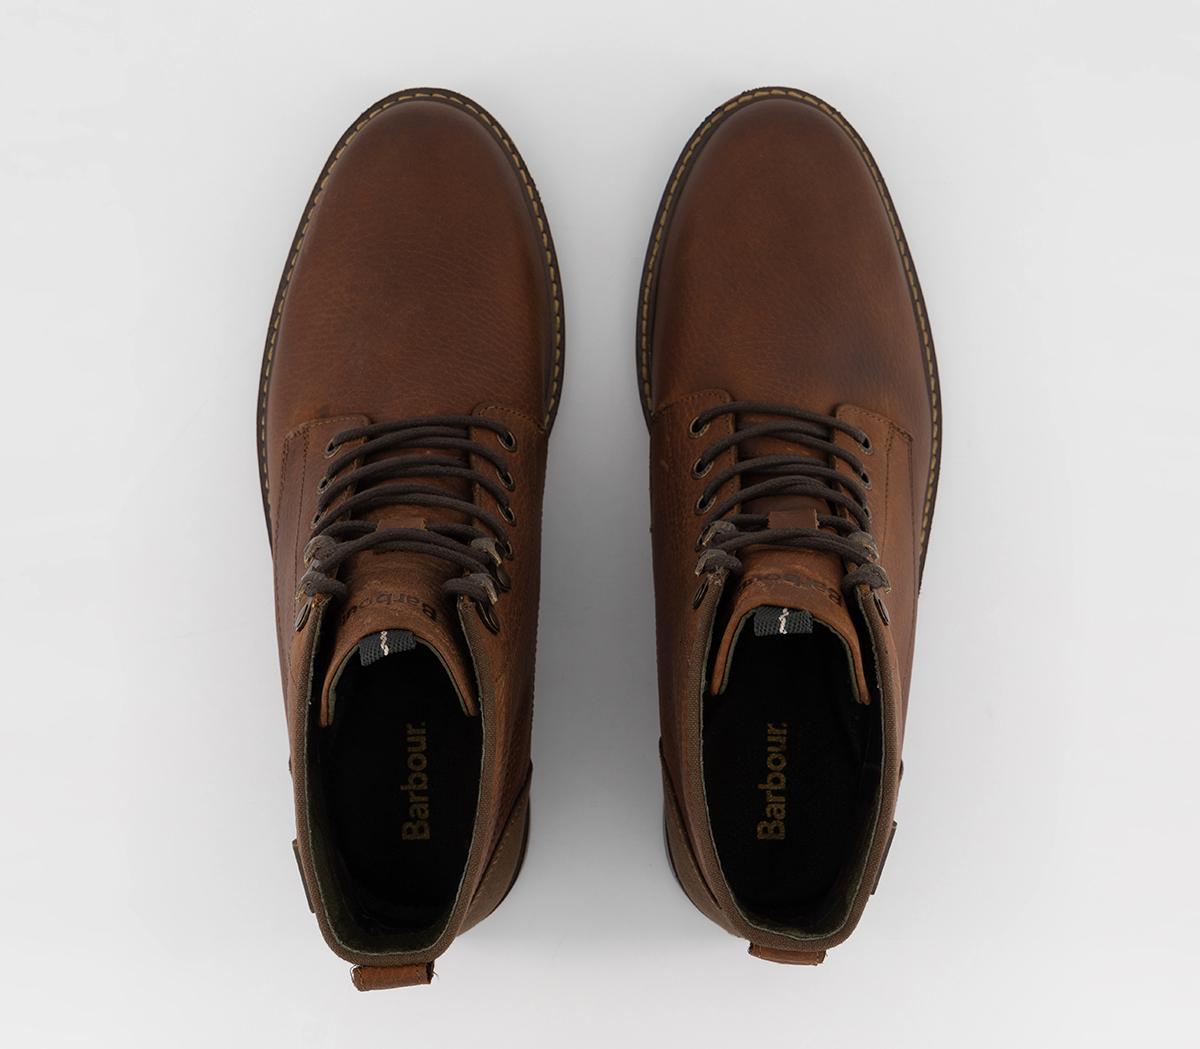 Barbour Deckham Boots Cedar - Men's Casual Shoes